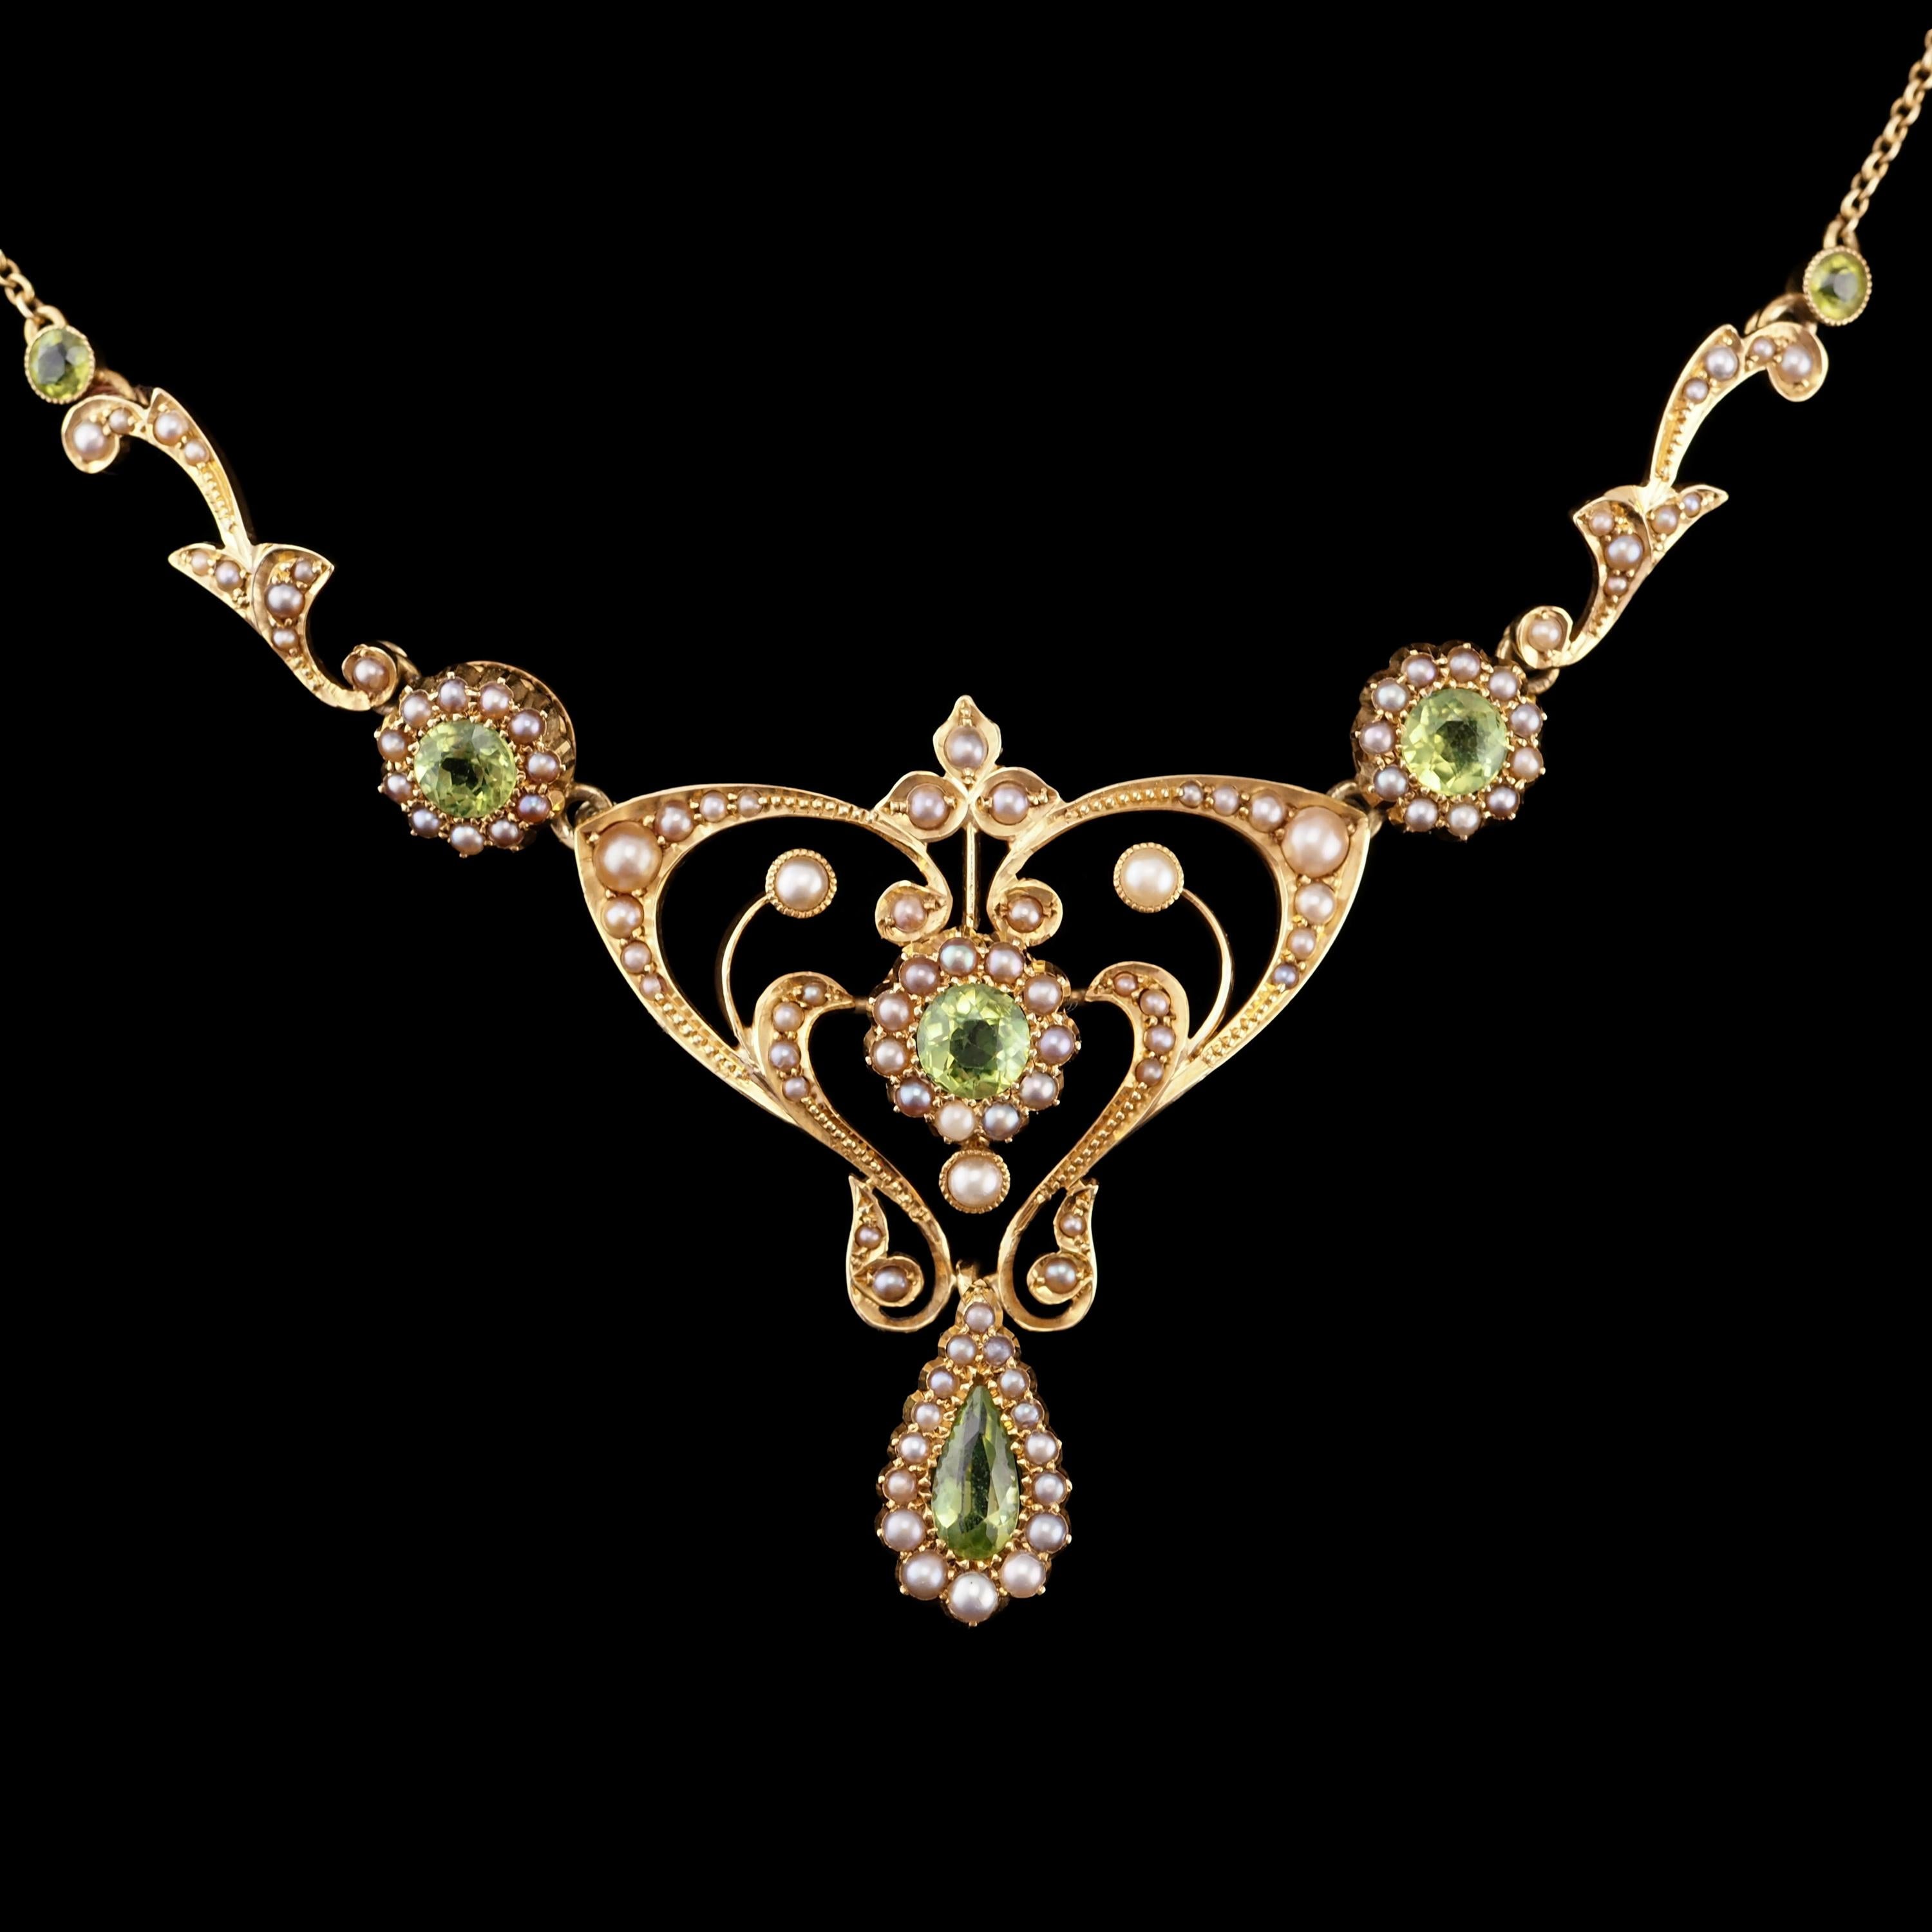 Antique 15K Gold Peridot & Pearl Lavalier Necklace - Art Nouveau c.1900s 10